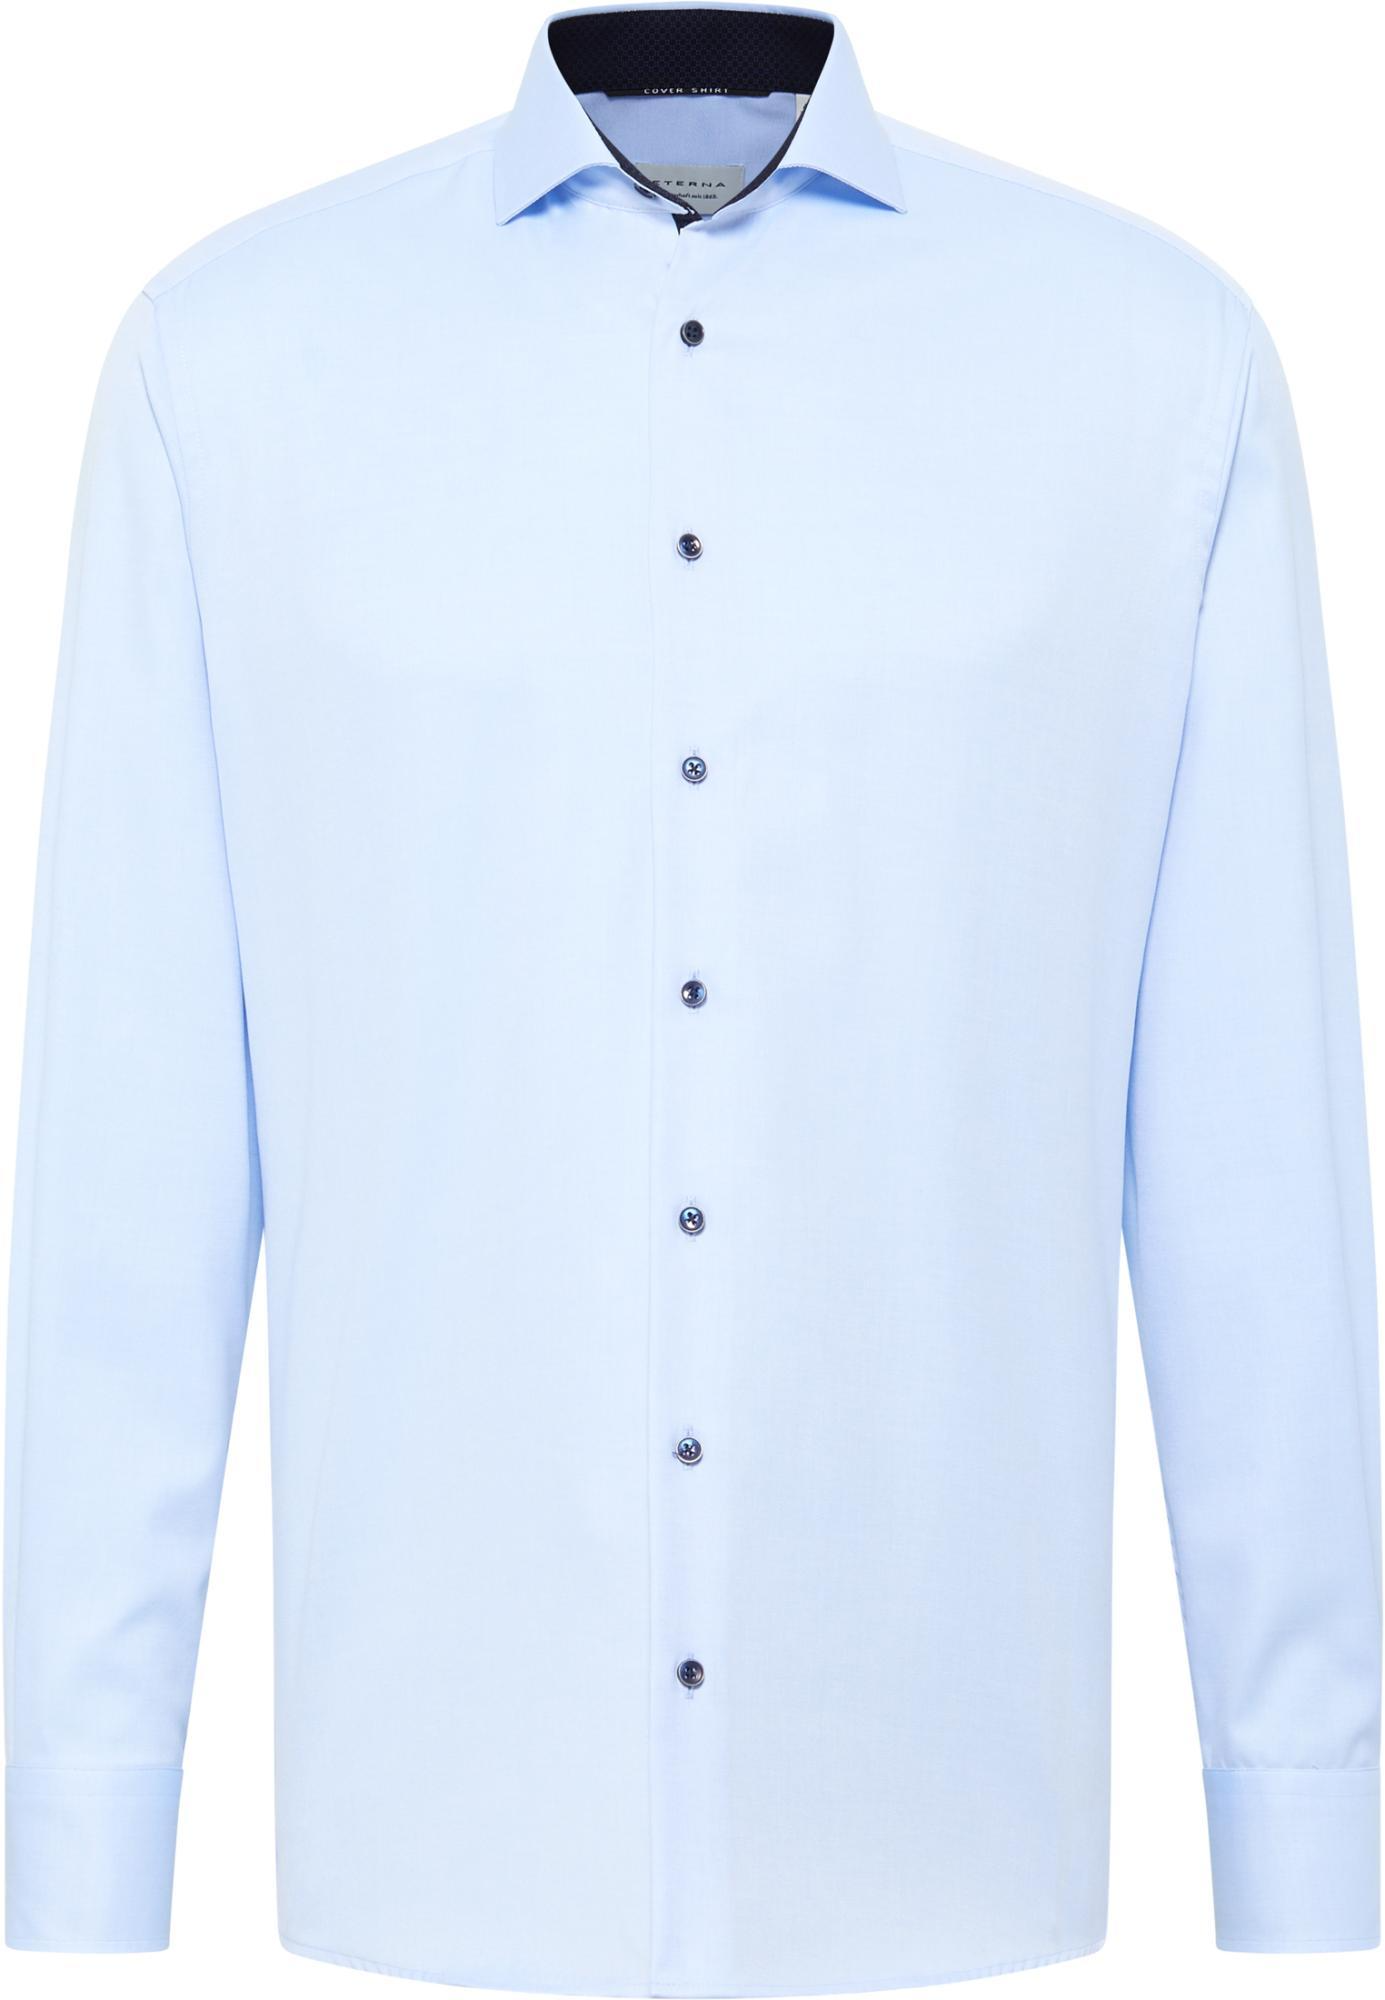 Мужская рубашка ETERNA, голубая, цвет голубой, размер 50 - фото 6